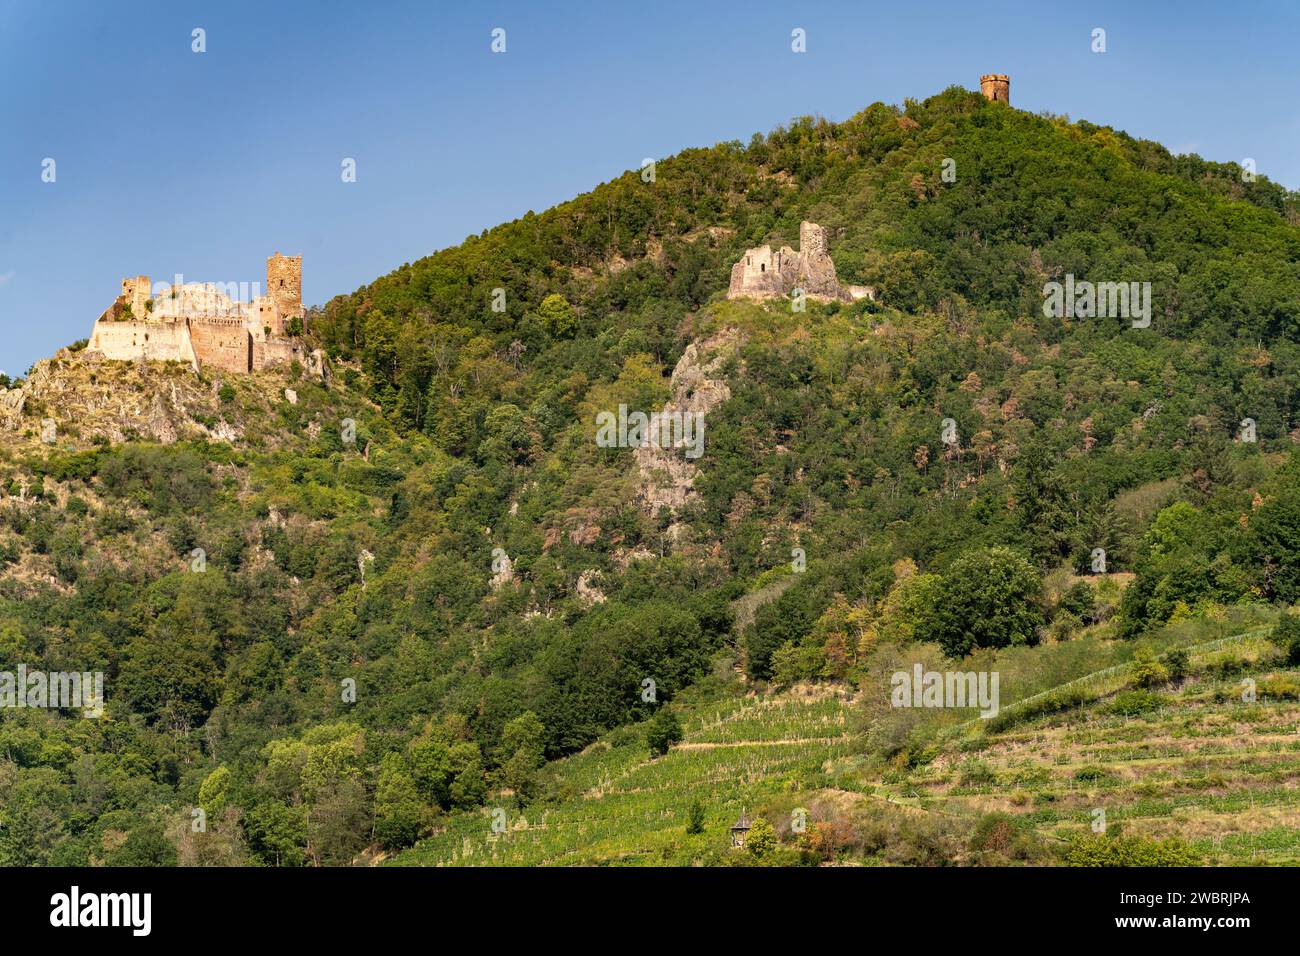 Die drei Burgen von Ribeauvillé, Elsass, Frankreich | trois châteaux de Ribeauville, Alsace, France Banque D'Images